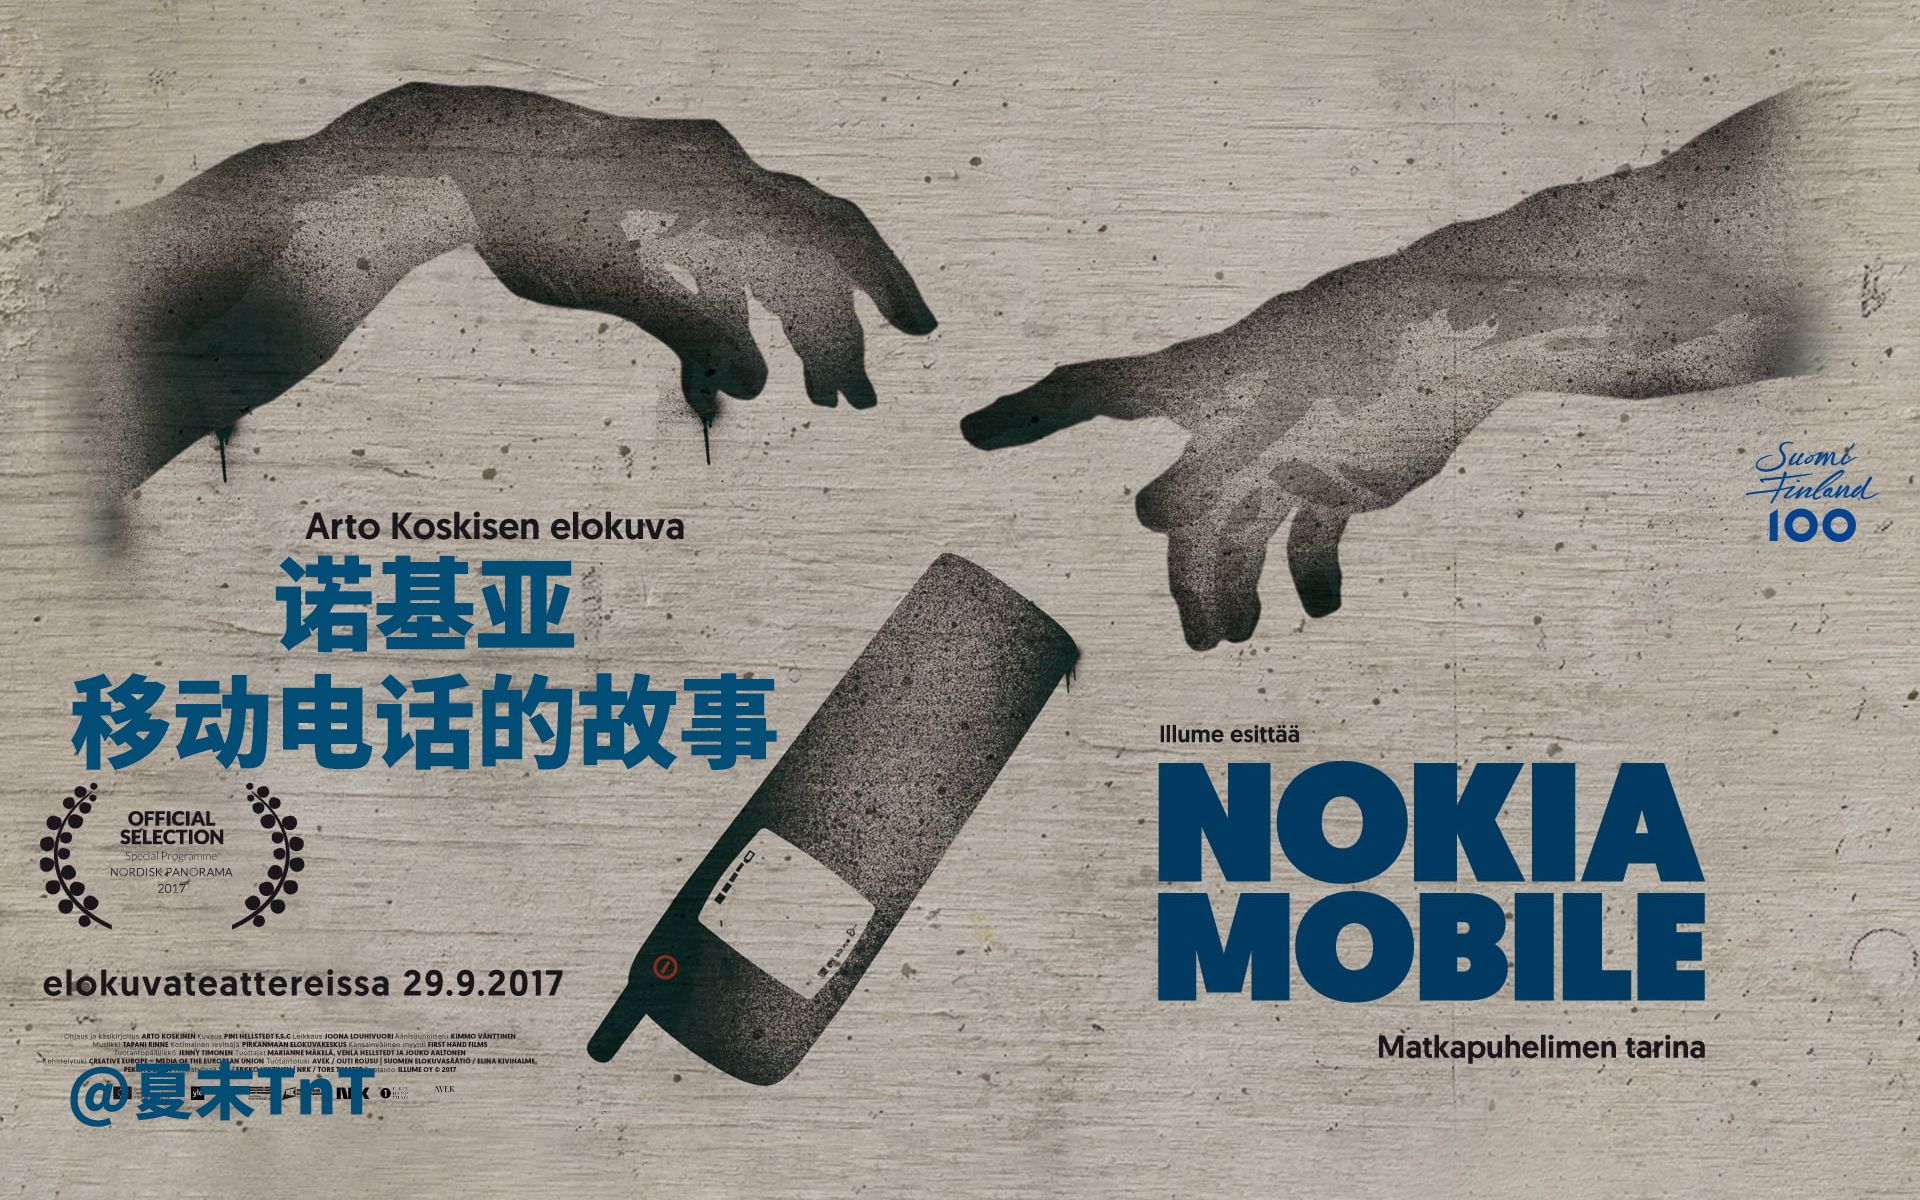 诺基亚—移动电话的故事 英字生肉 Nokia Mobile - matkapuhelimen tarina